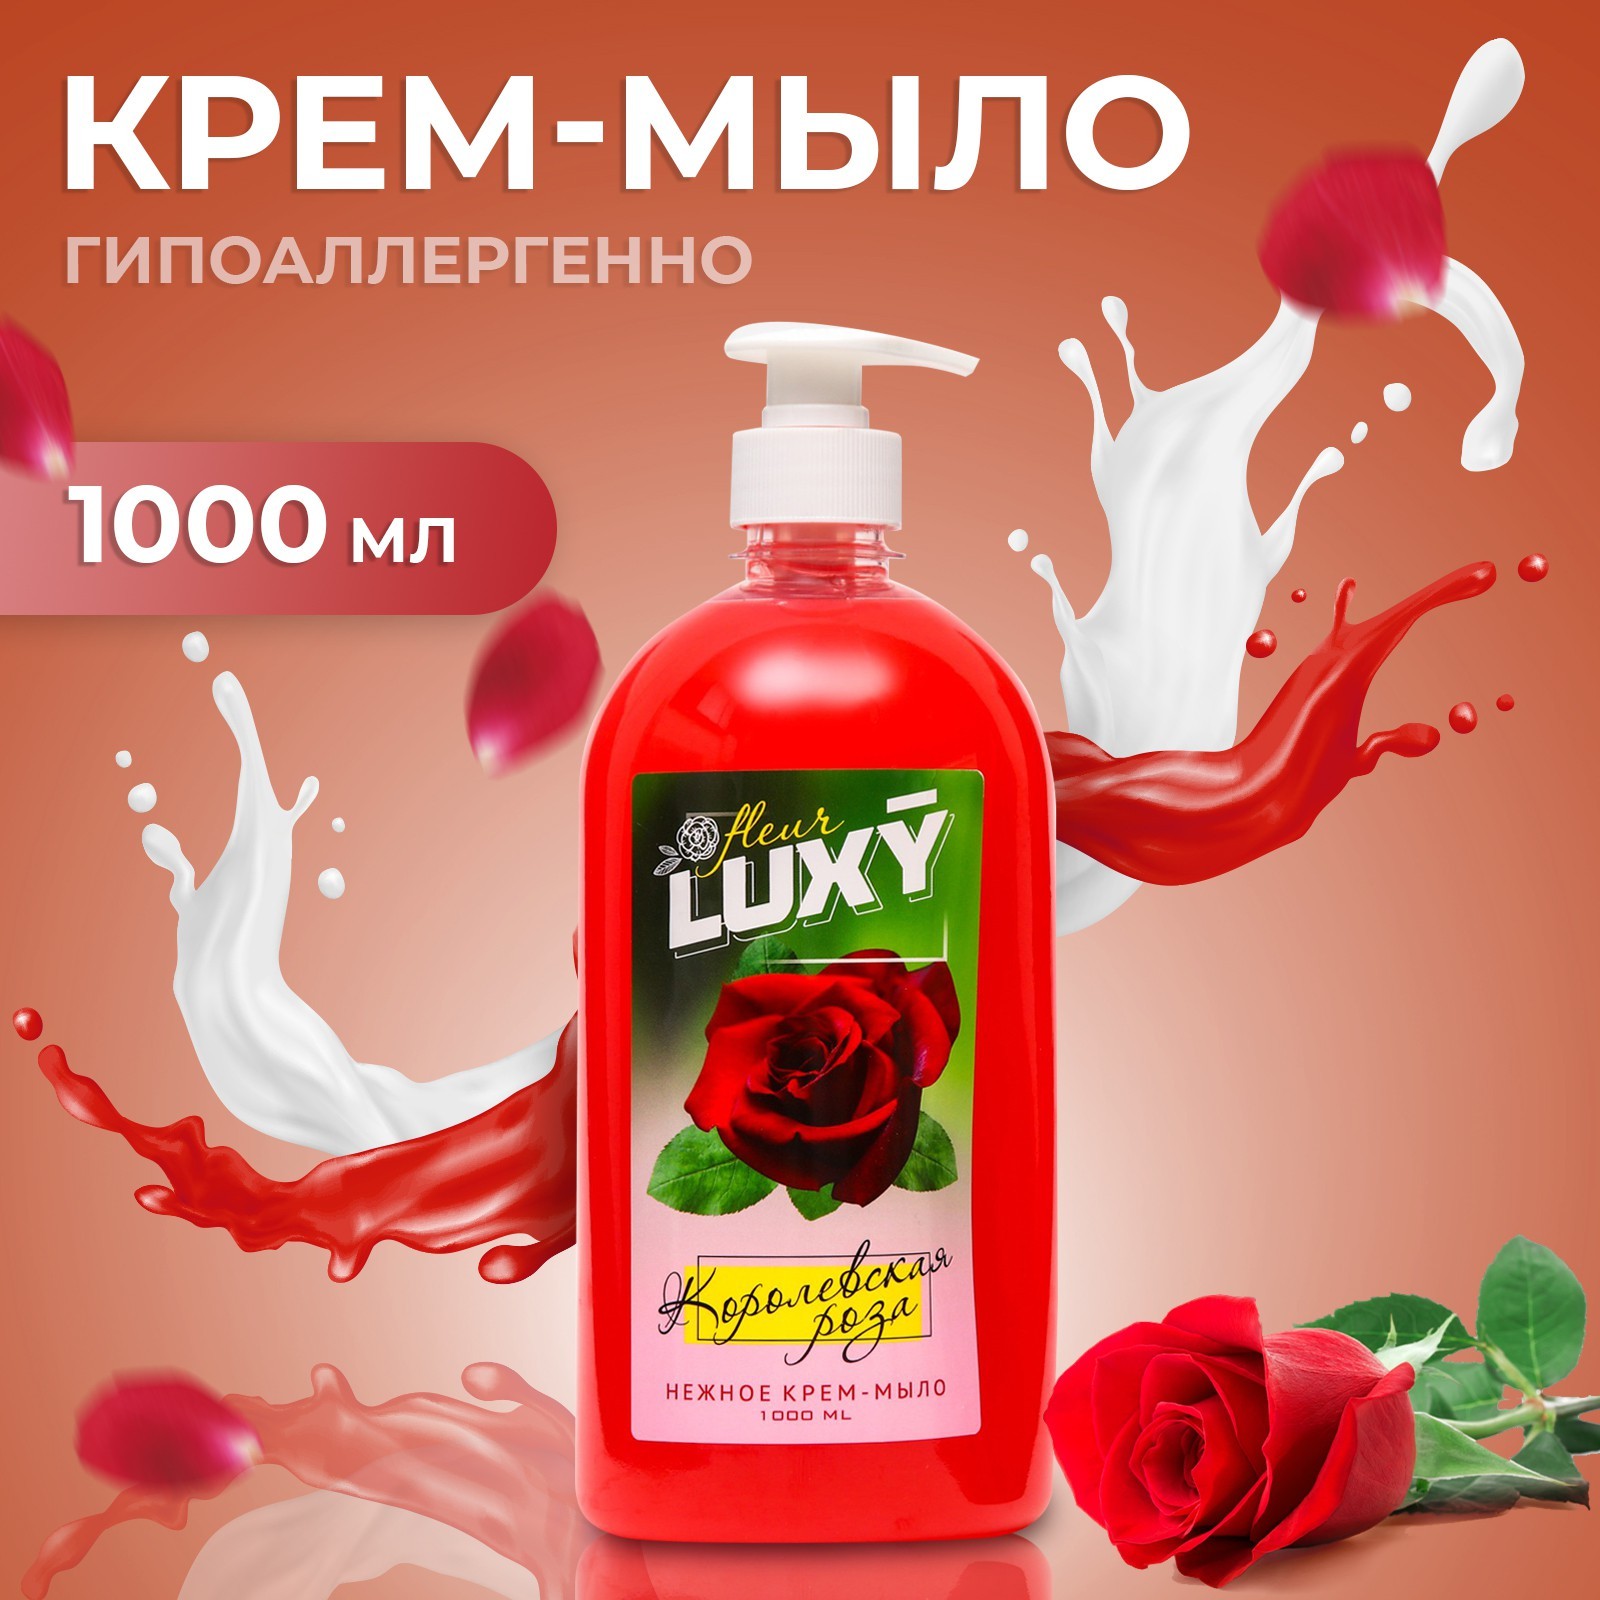 Крем-мыло жидкое Luxy Fleur королевская роза с дозатором 1 л крем мыло для рук и тела mariakas жидкое парфюмированное fleur 500мл